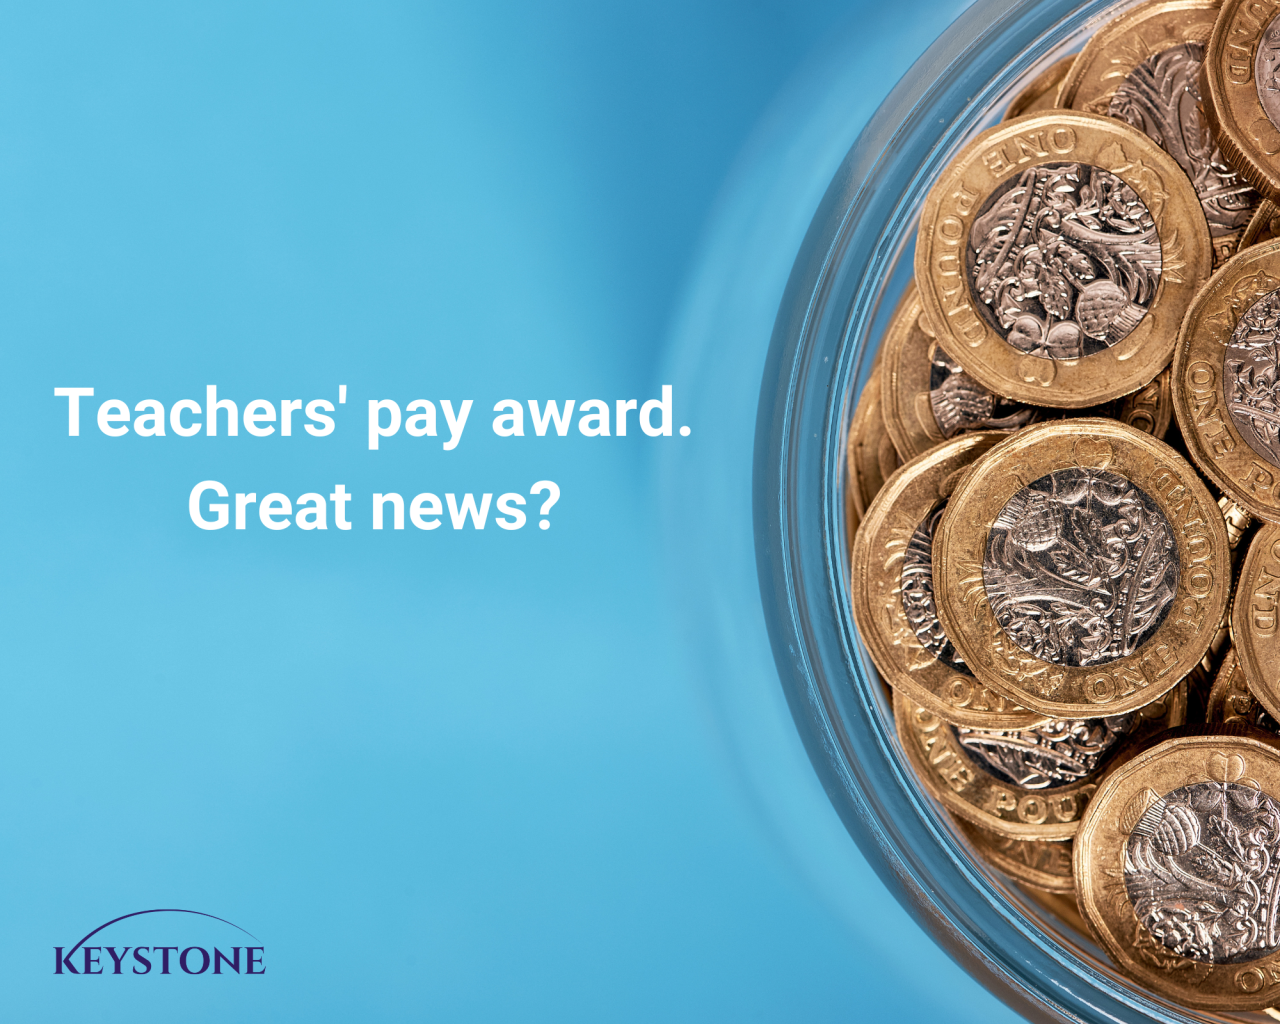 Teachers' pay award